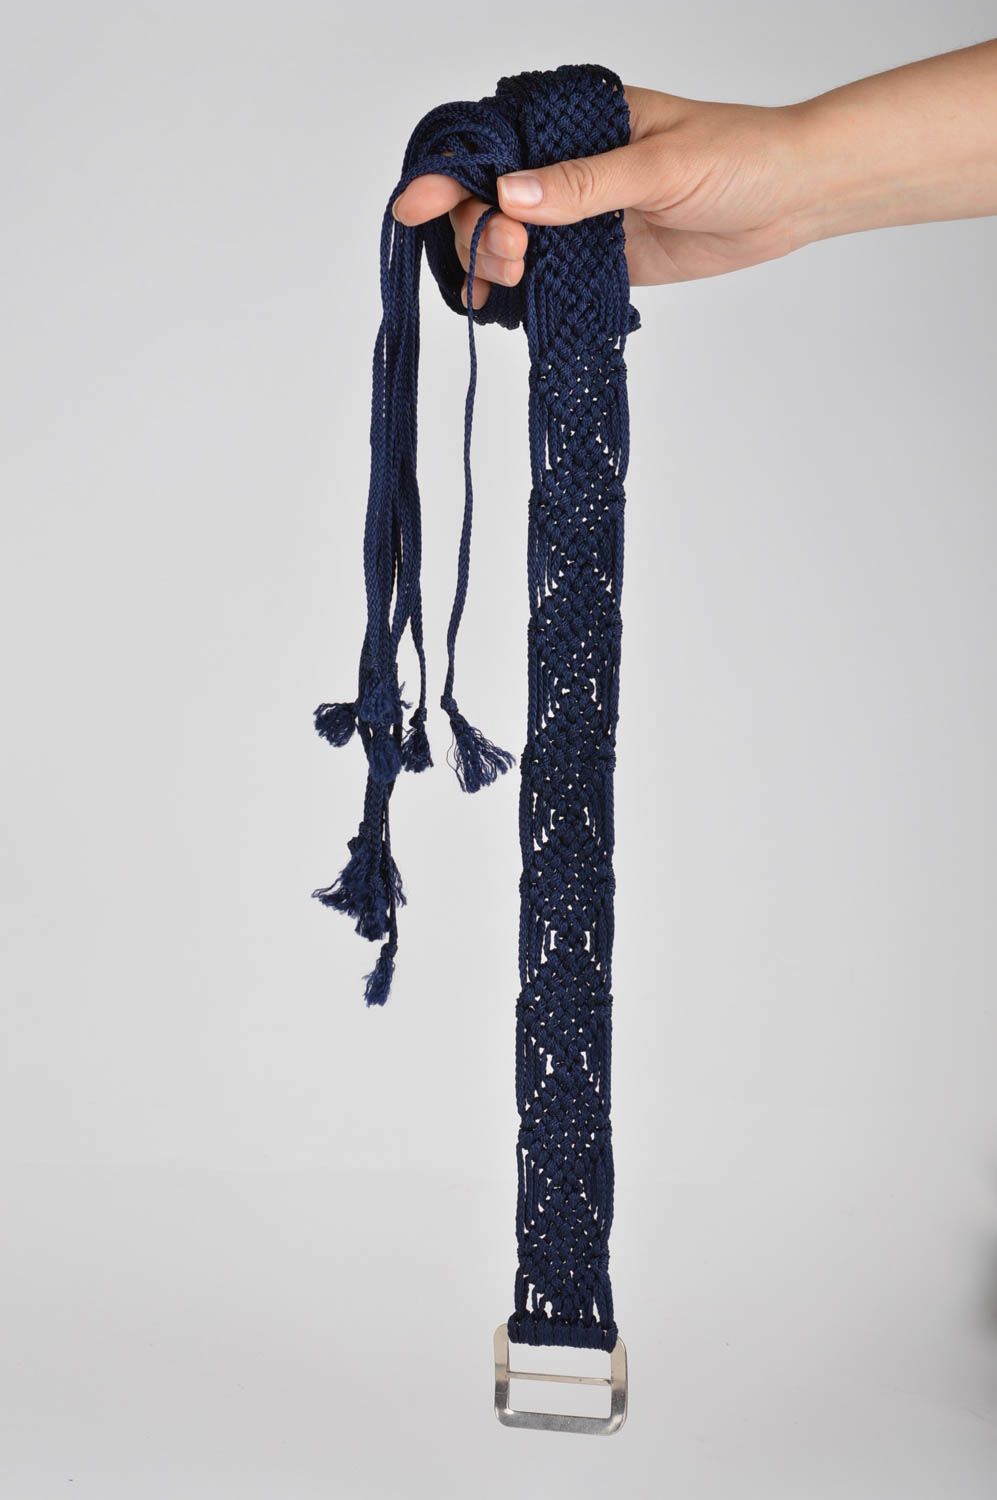 Пояс из шнурков плетеный ручной работы женский синий темный с пряжкой стильный фото 2